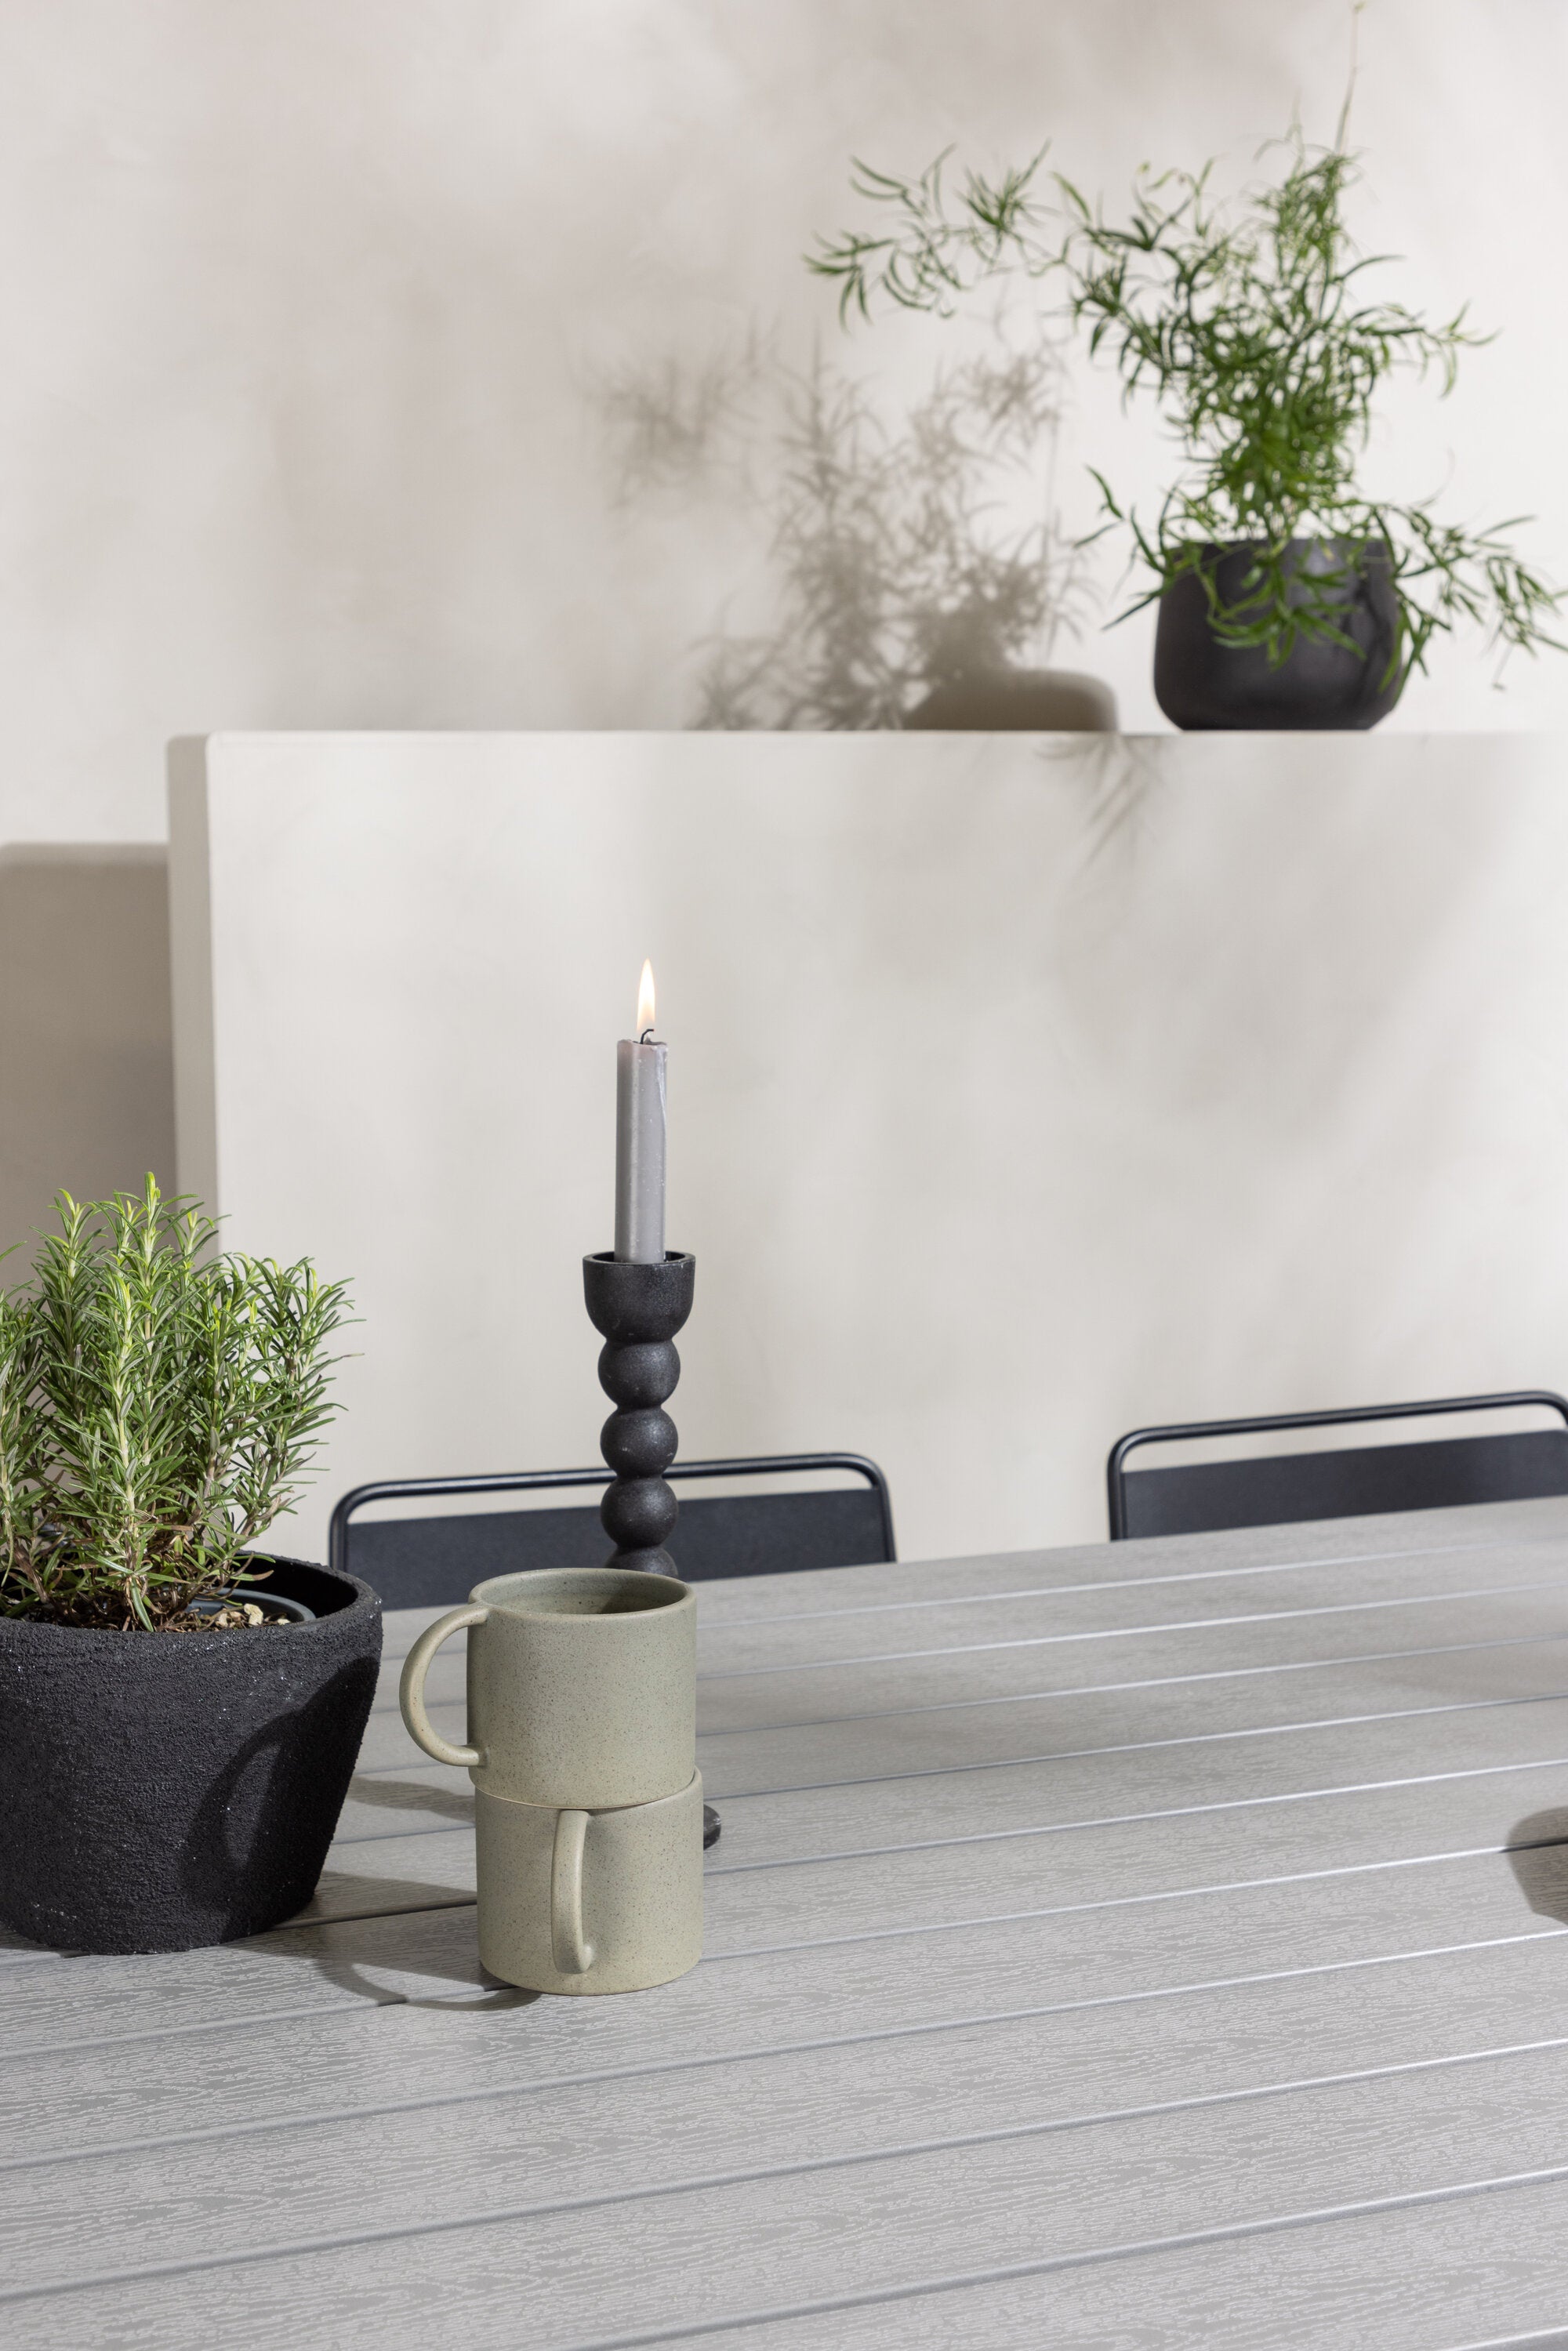 Garcia Outdoor-Tischset + Lina 200cm/6St. in Weiss / Schwarz präsentiert im Onlineshop von KAQTU Design AG. Gartentischset ist von Venture Home